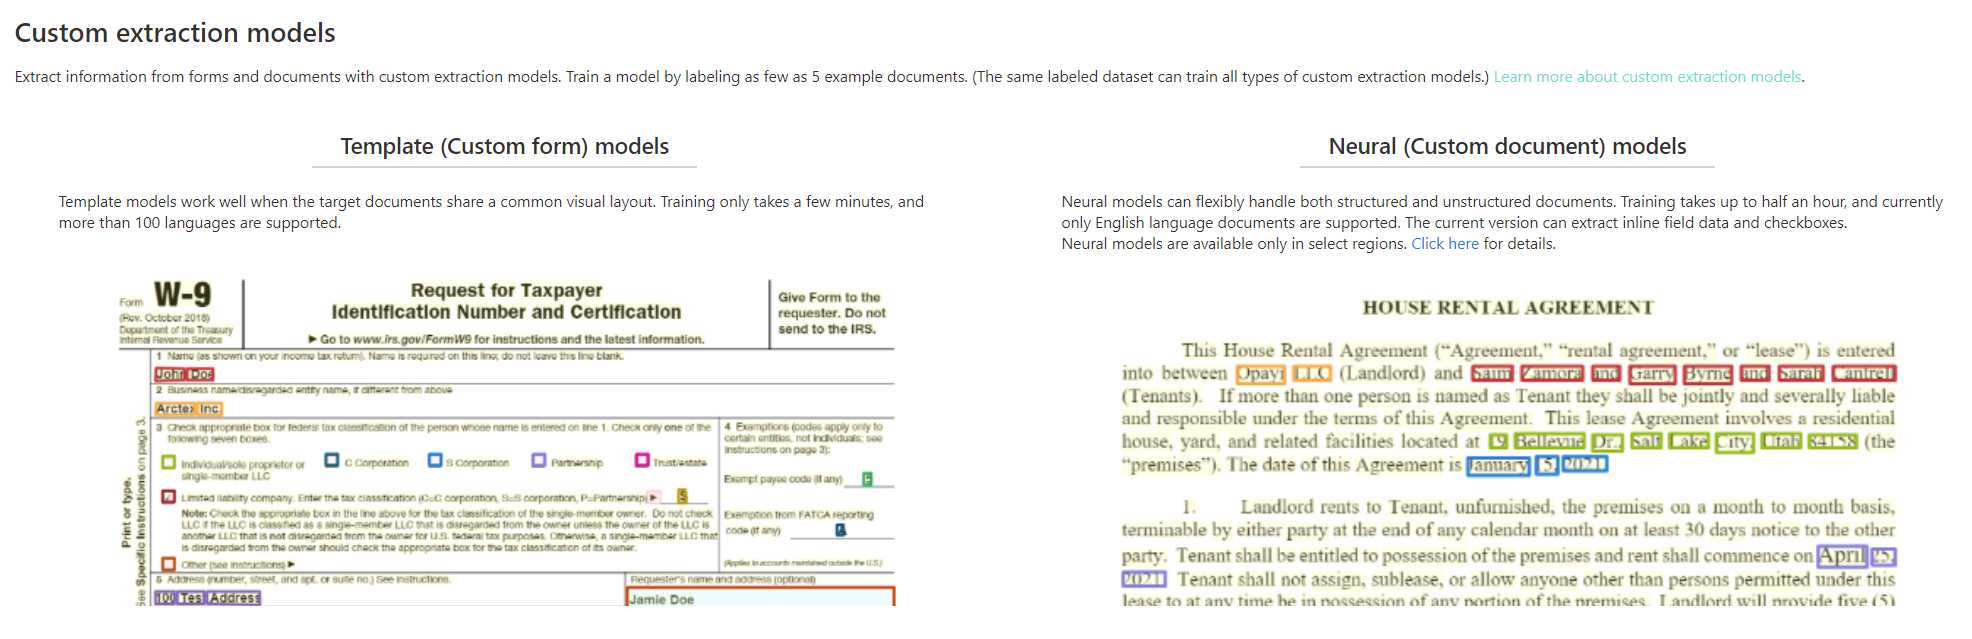 Captura de tela da análise do modelo de extração personalizado no Document Intelligence Studio.